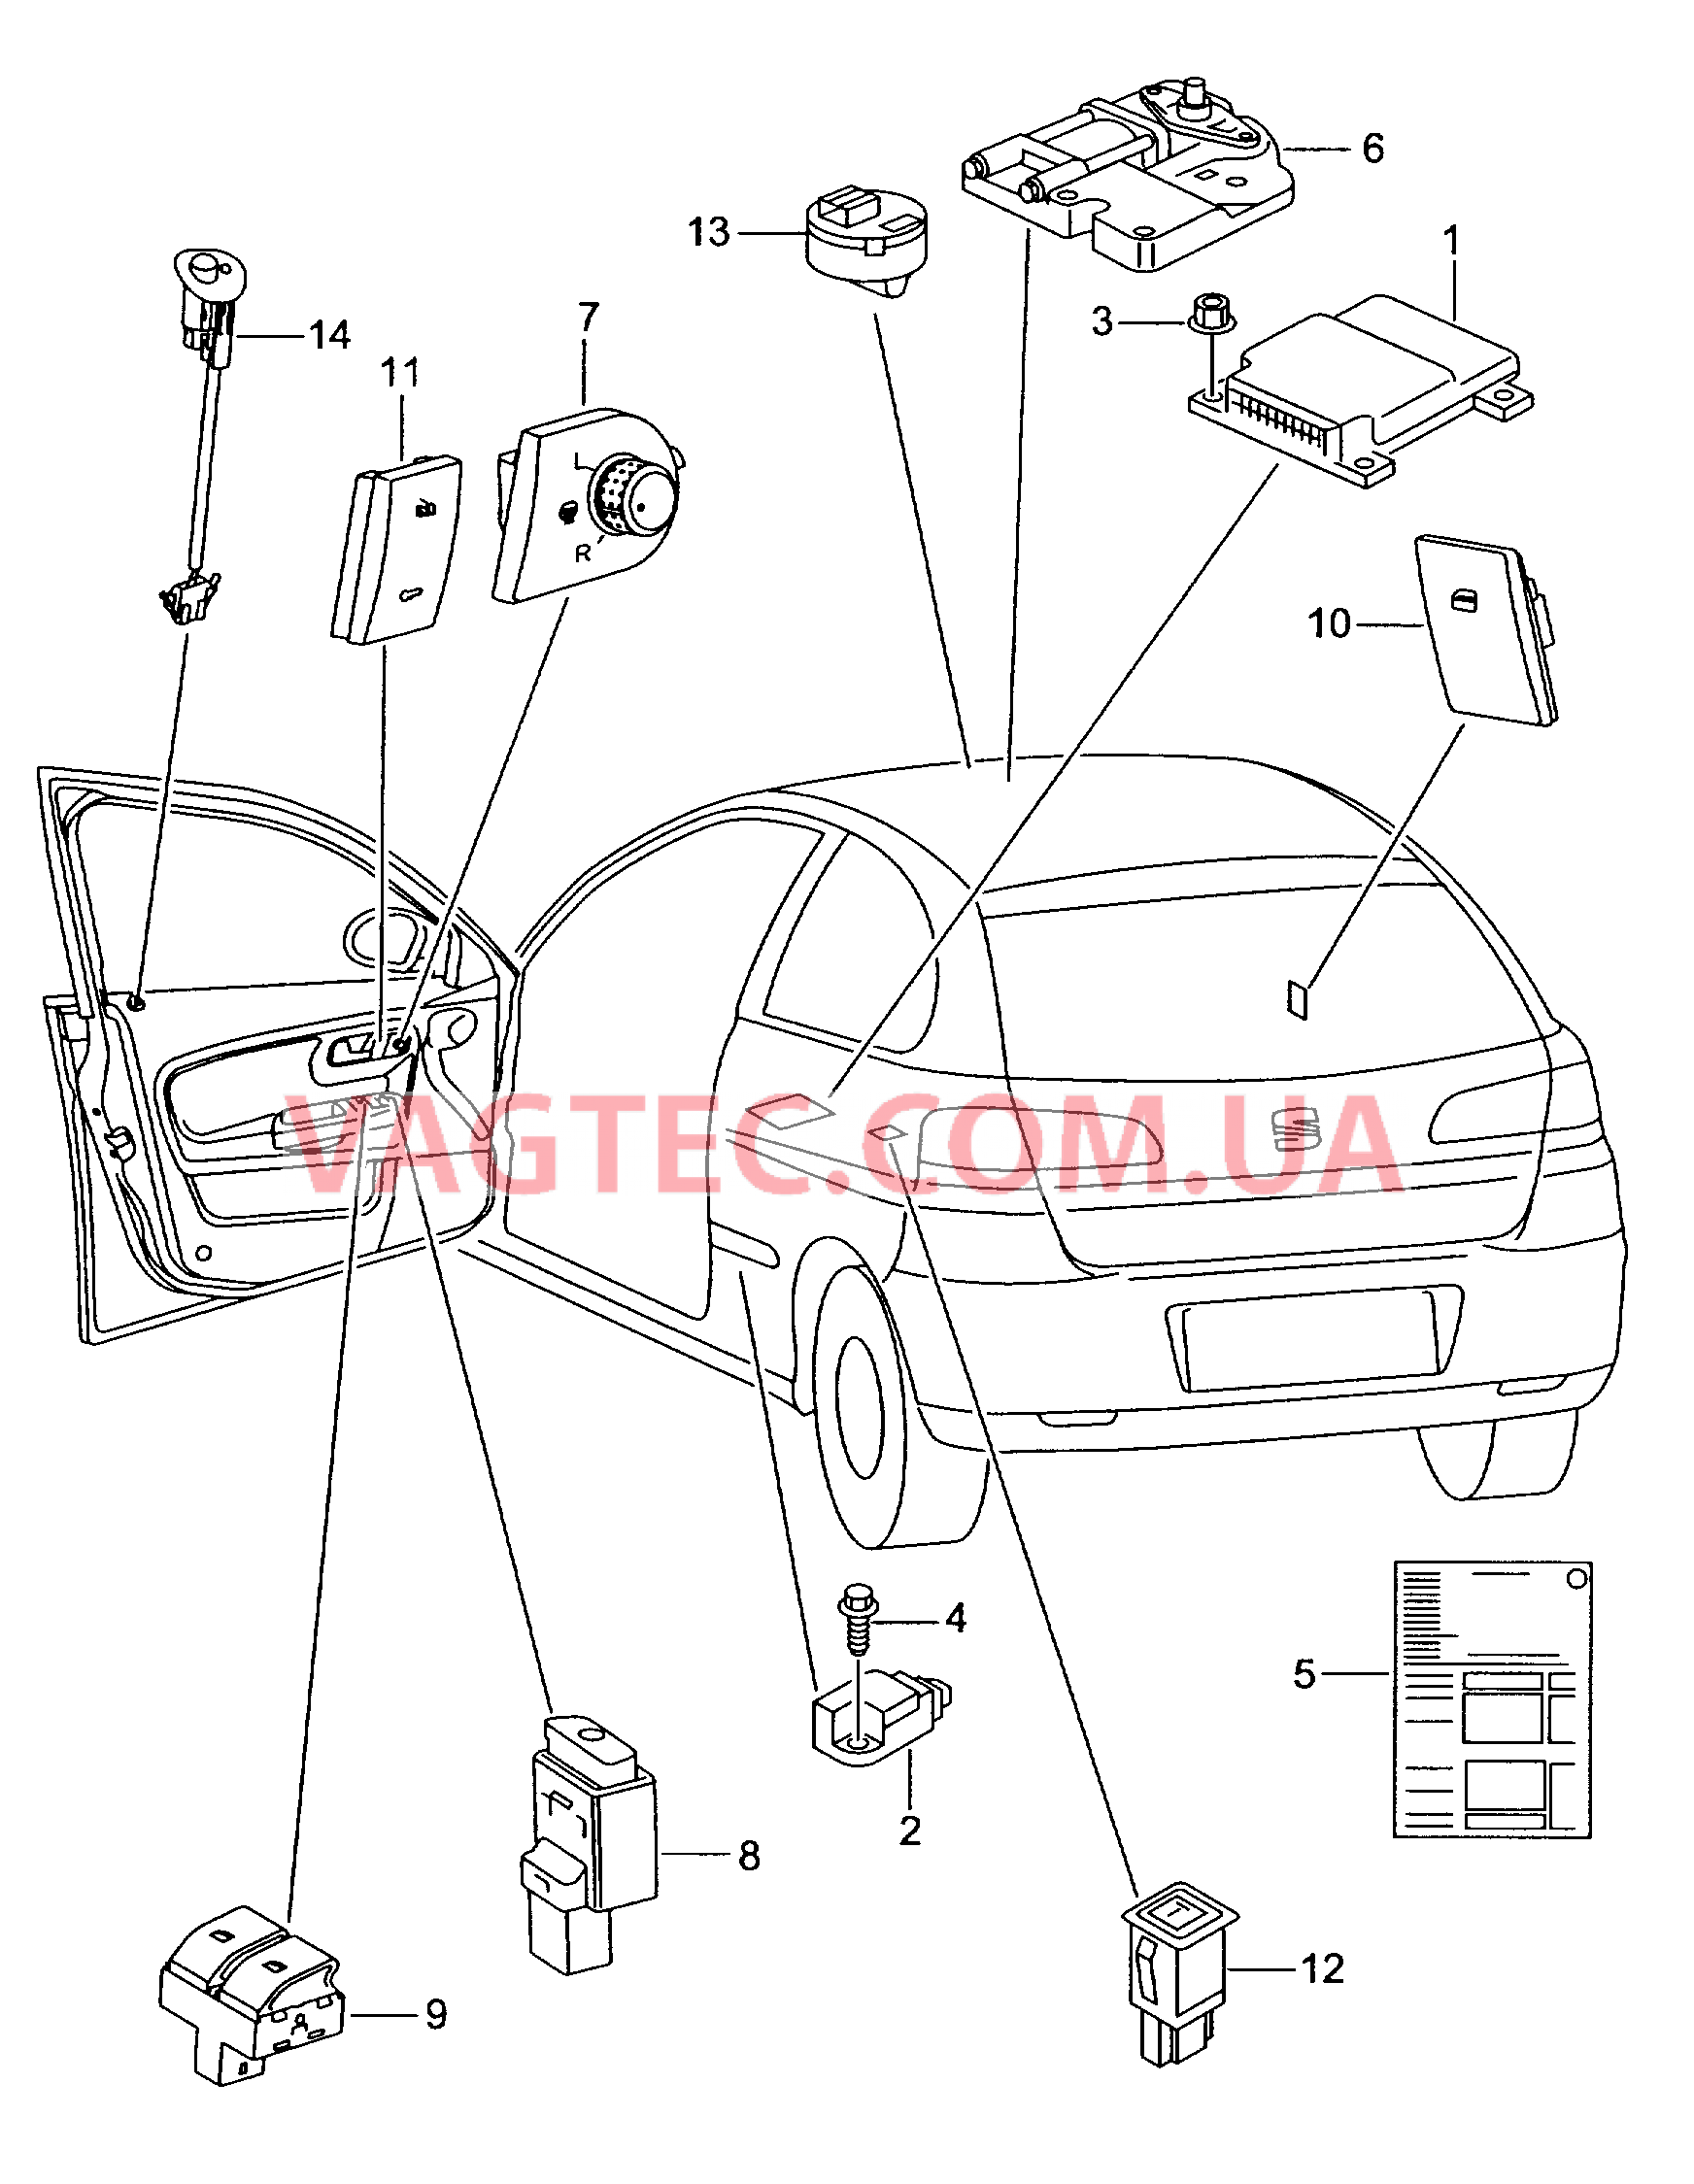 Электродетали для подуш.безоп. Мотор привода люка Выключатель в обивке двери Лампа, контрольная для противоугонной системы  для SEAT Ibiza 2002-1